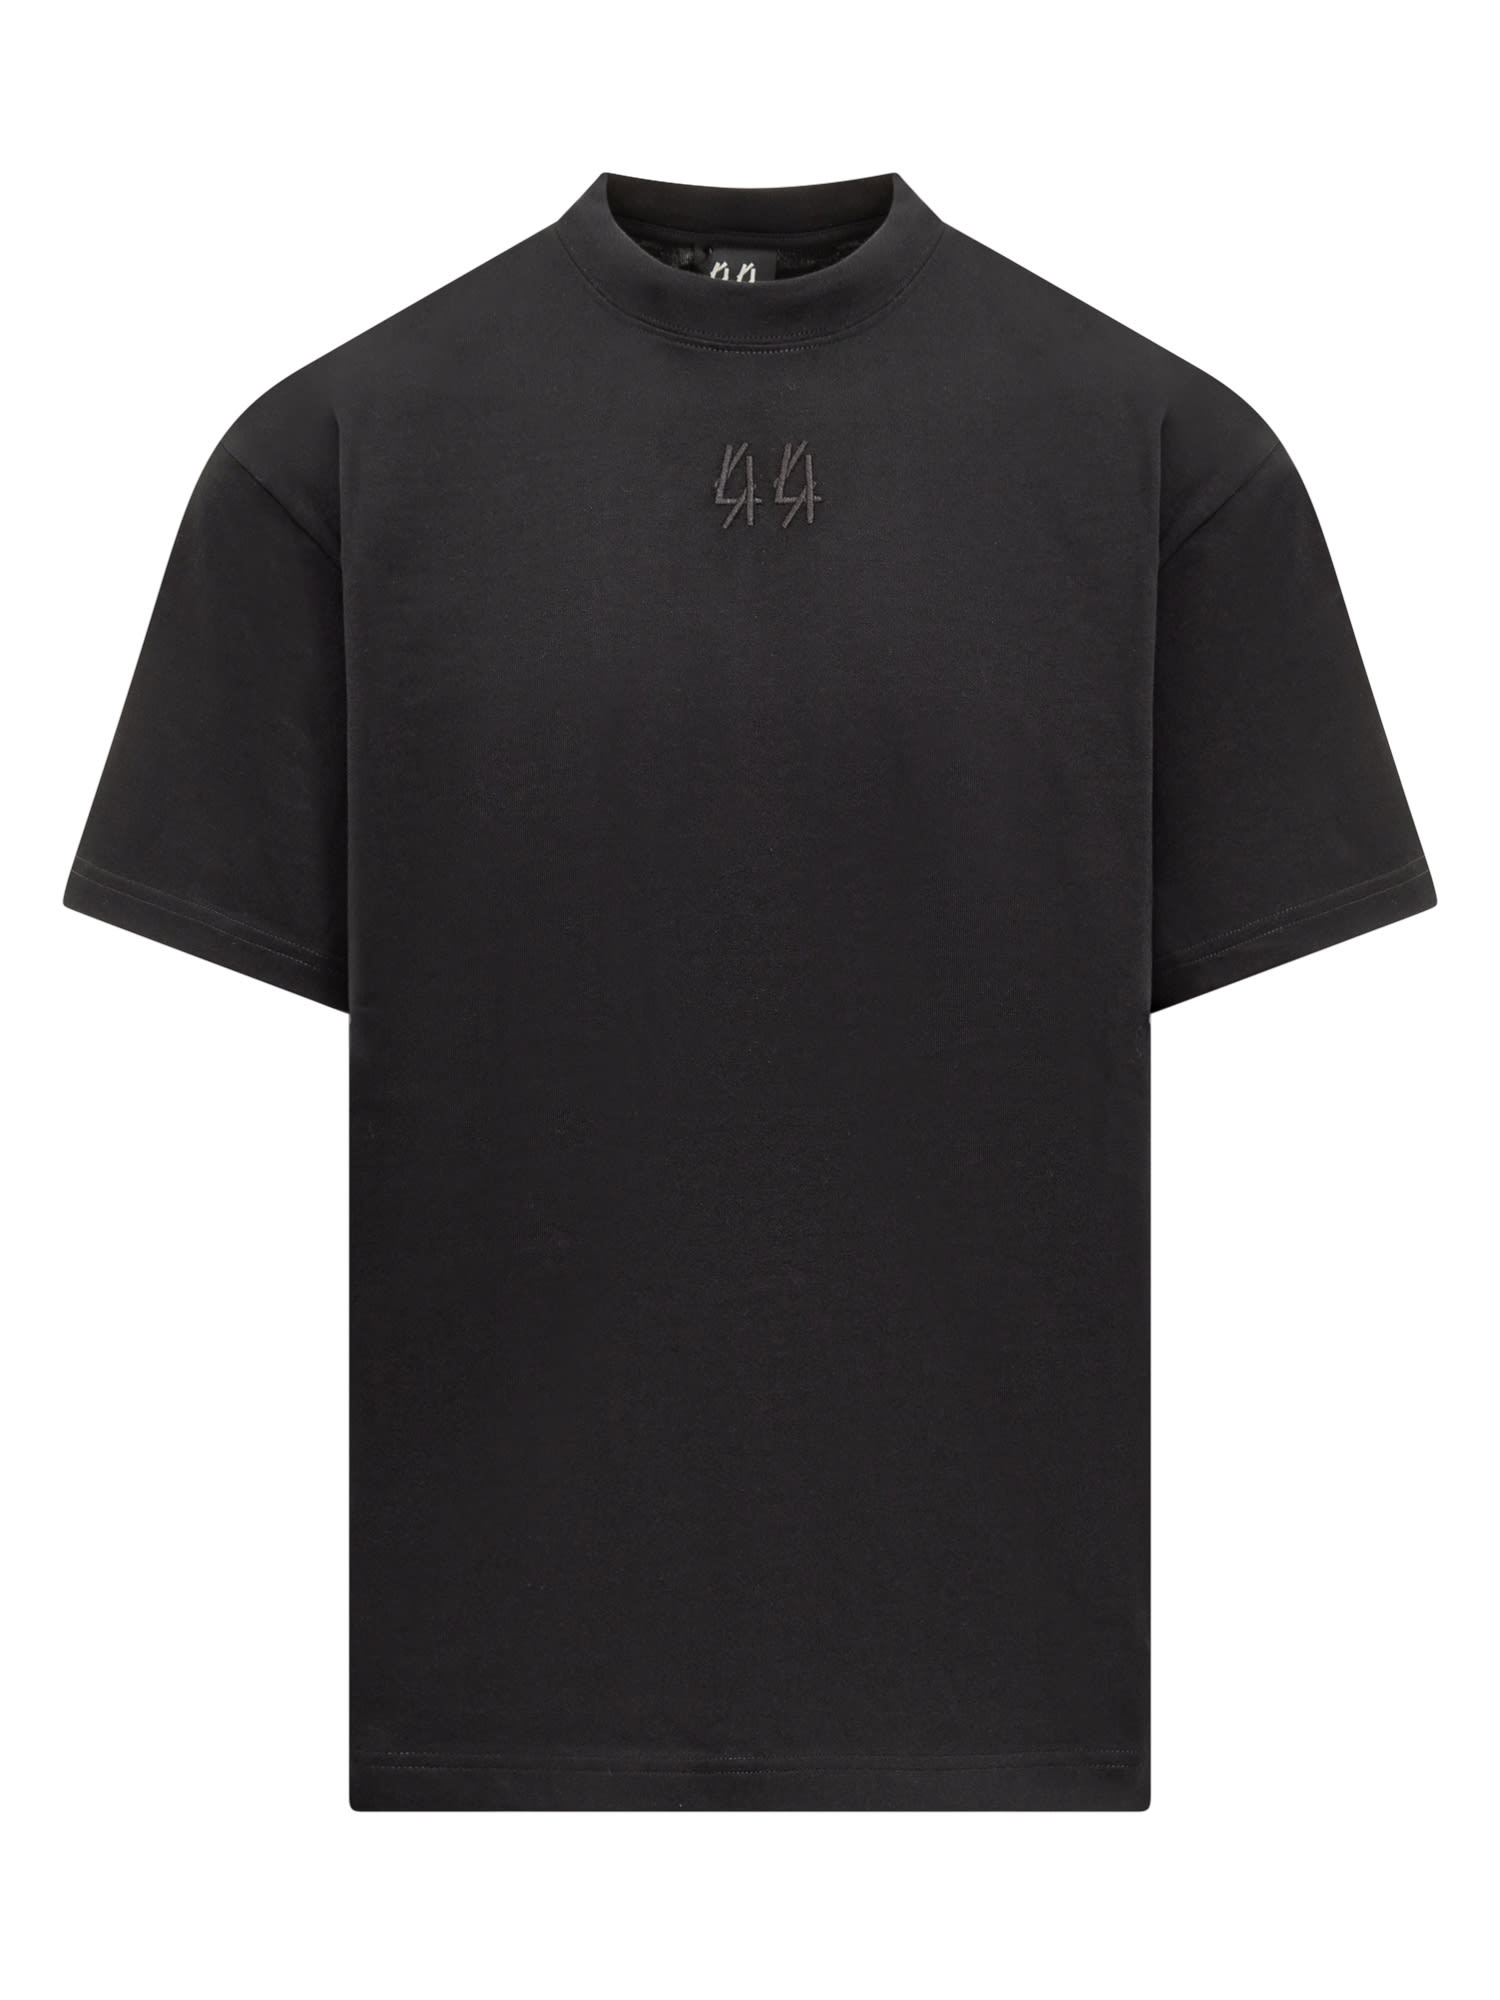 Shop 44 Label Group Gaffer T-shirt In Black-44 Gaffer Print